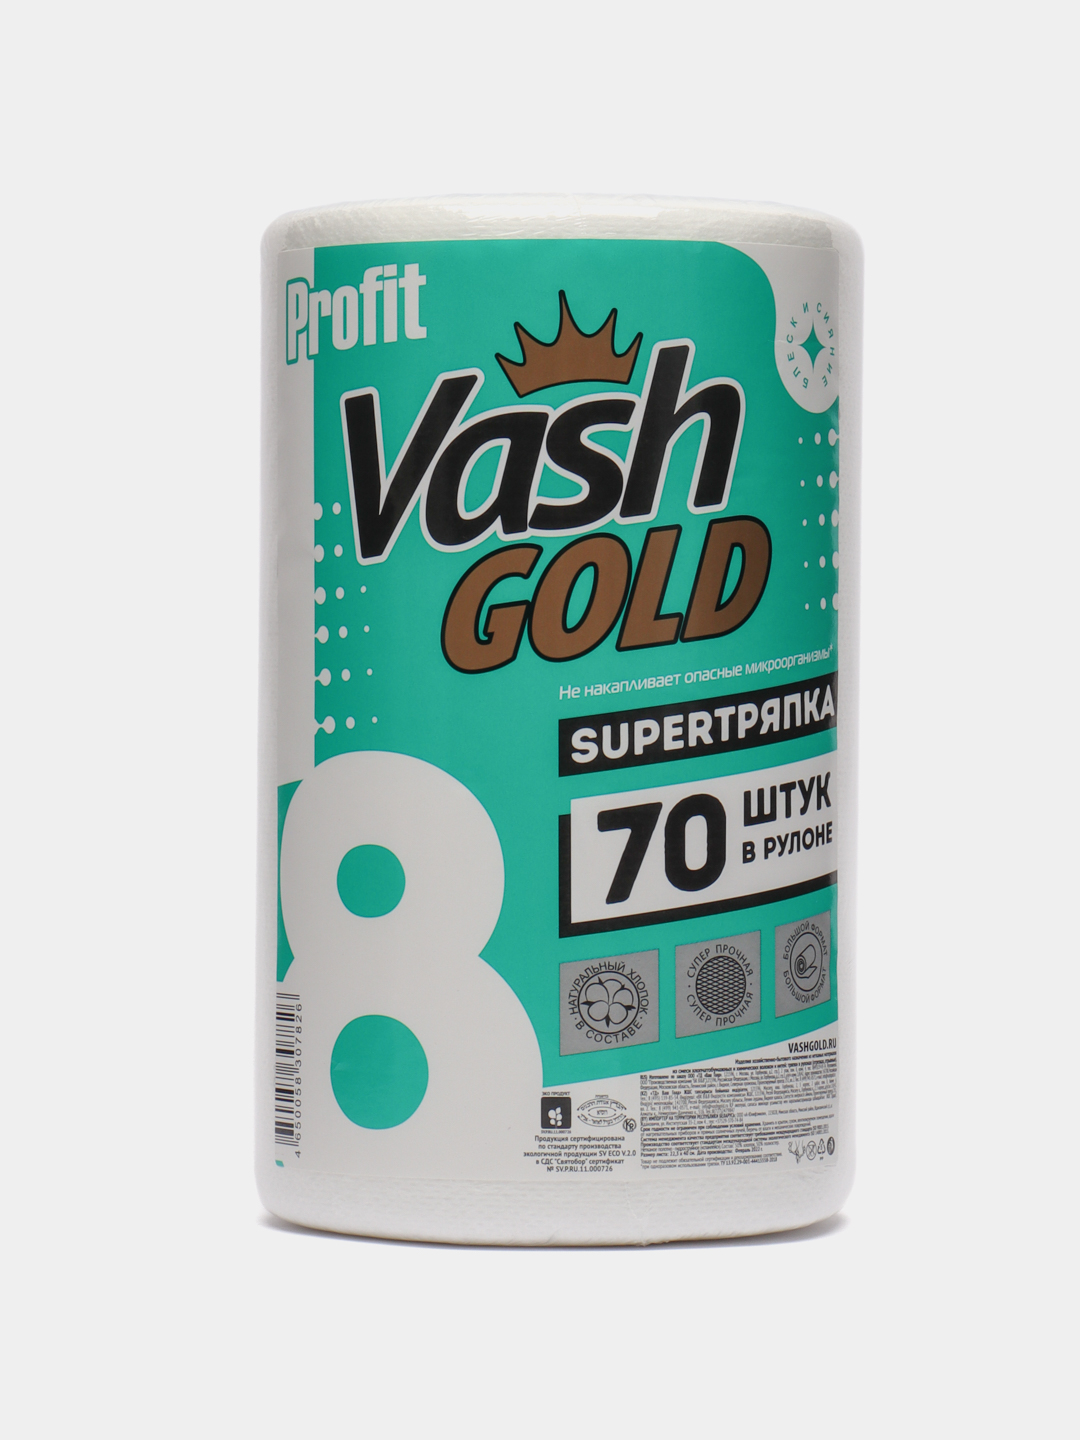 Vash gold super. Тряпка vash Gold super 22,3. Vash Gold 140 листов/рул. Vash Gold супер тряпка Оптима 70+7л/рул. Vash Gold 140 листов/рул производитель.